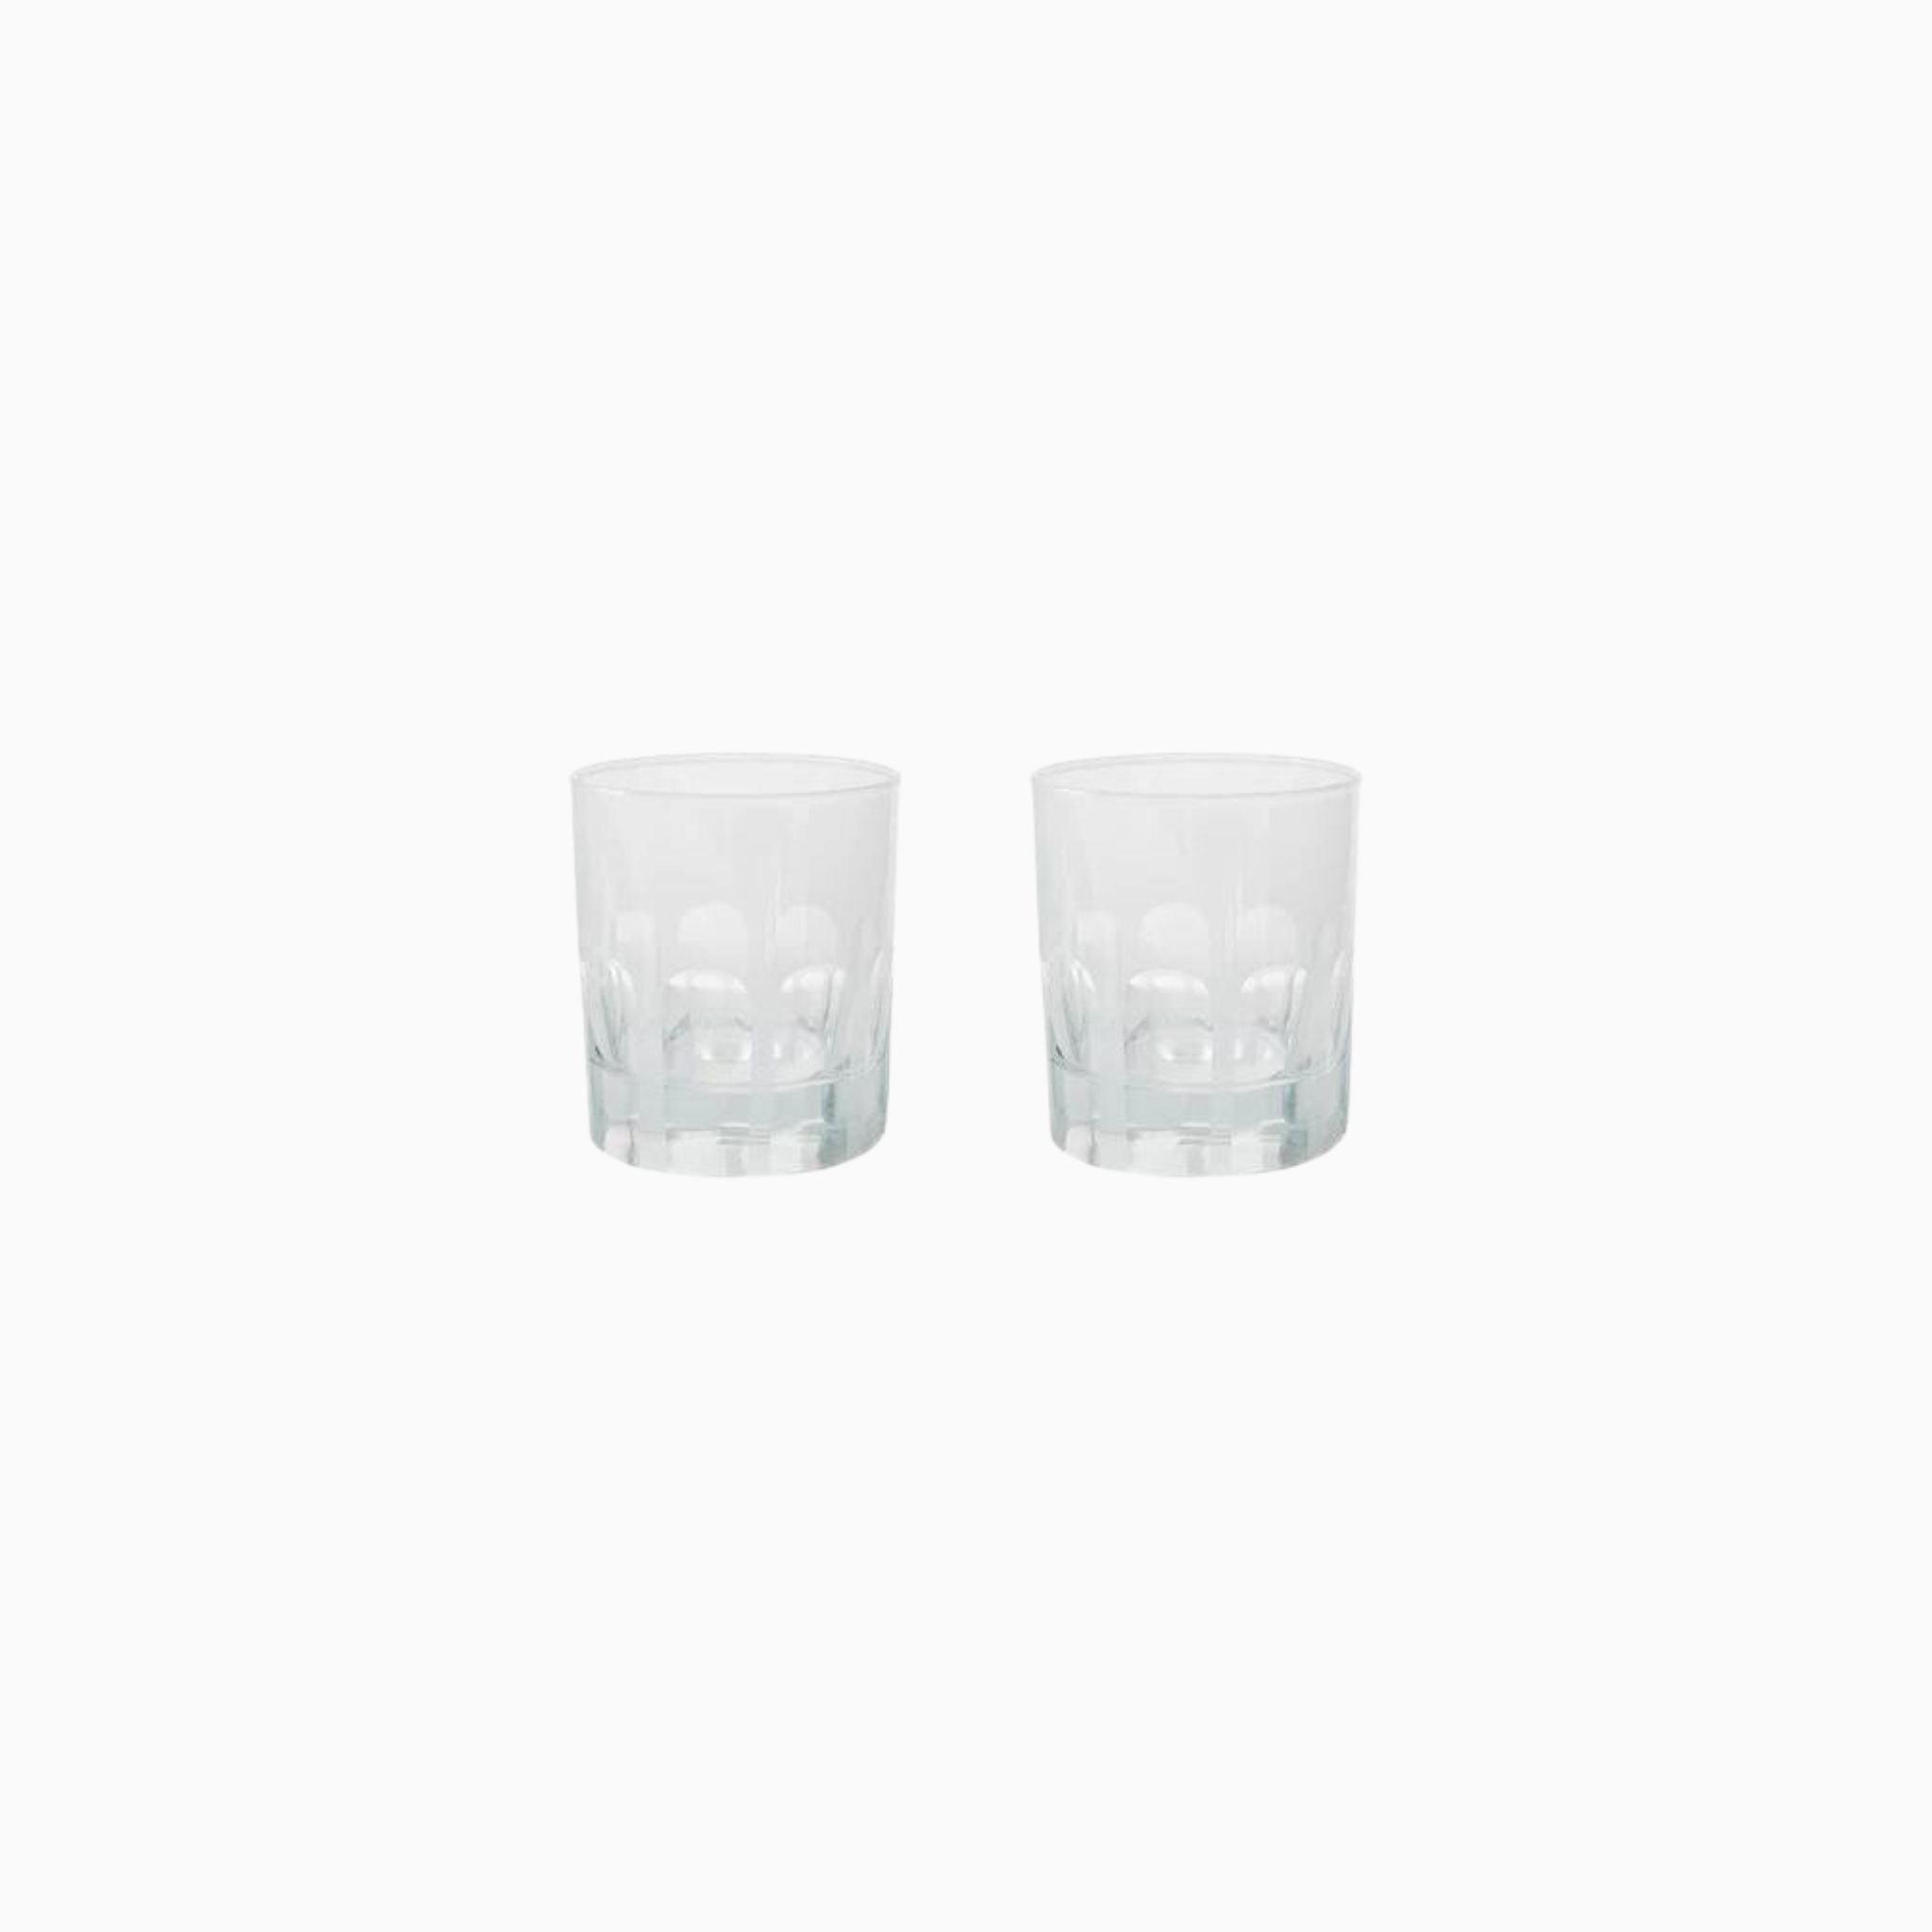 OPAL / RIALTO GLASS - SET OF 2